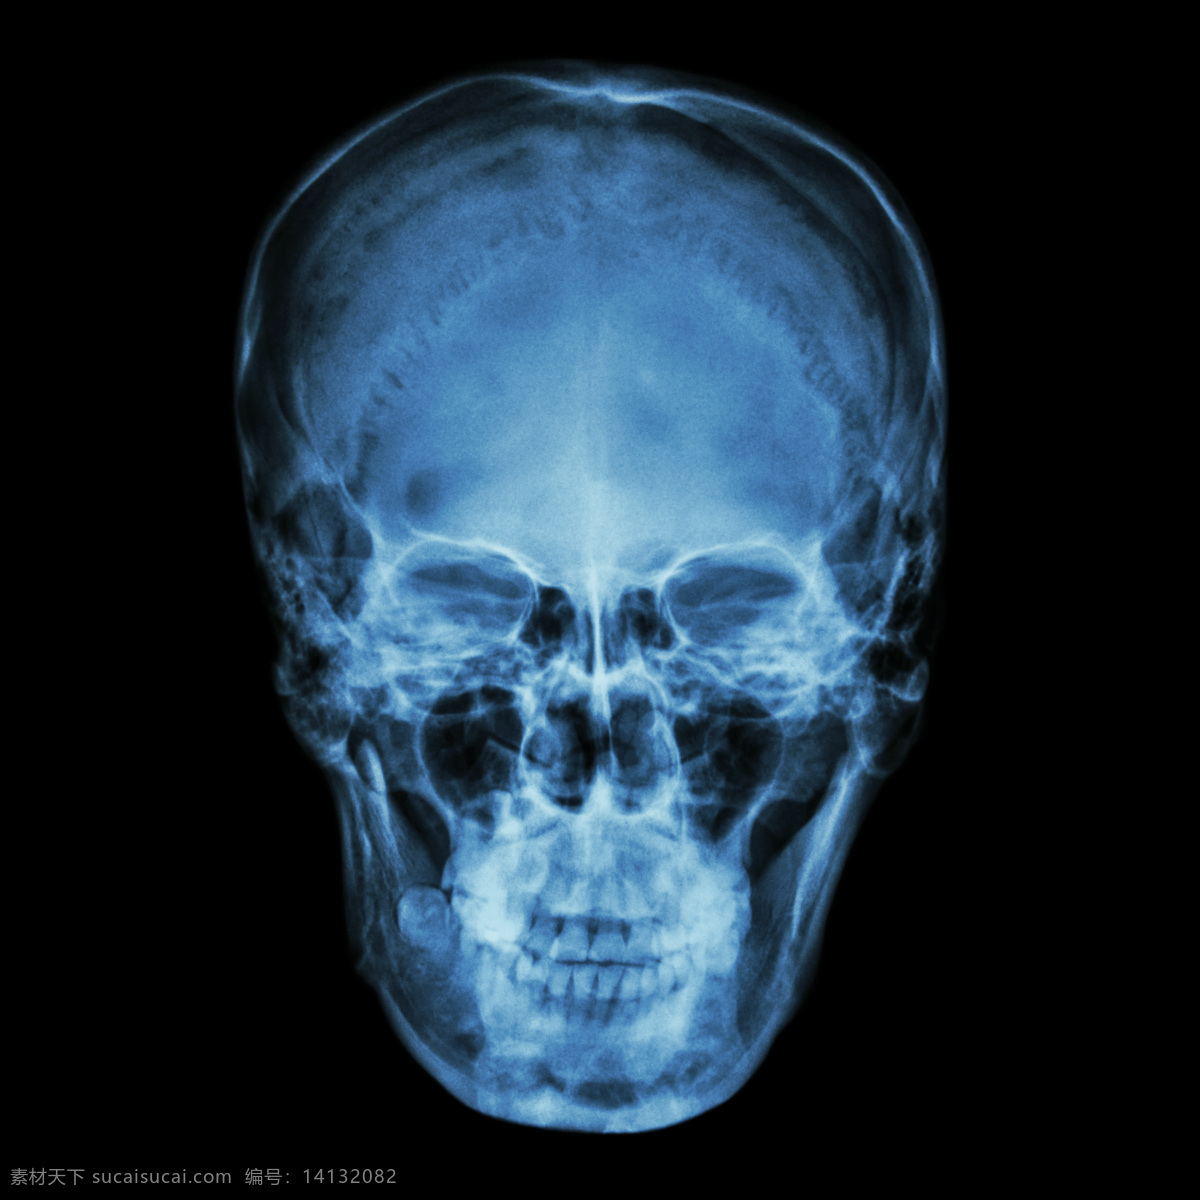 人 脸部 x 光 片 医疗护理 医学研究 x光片 x光片图片 医疗 拍片 医学研究素材 护理 图片库 现代科技